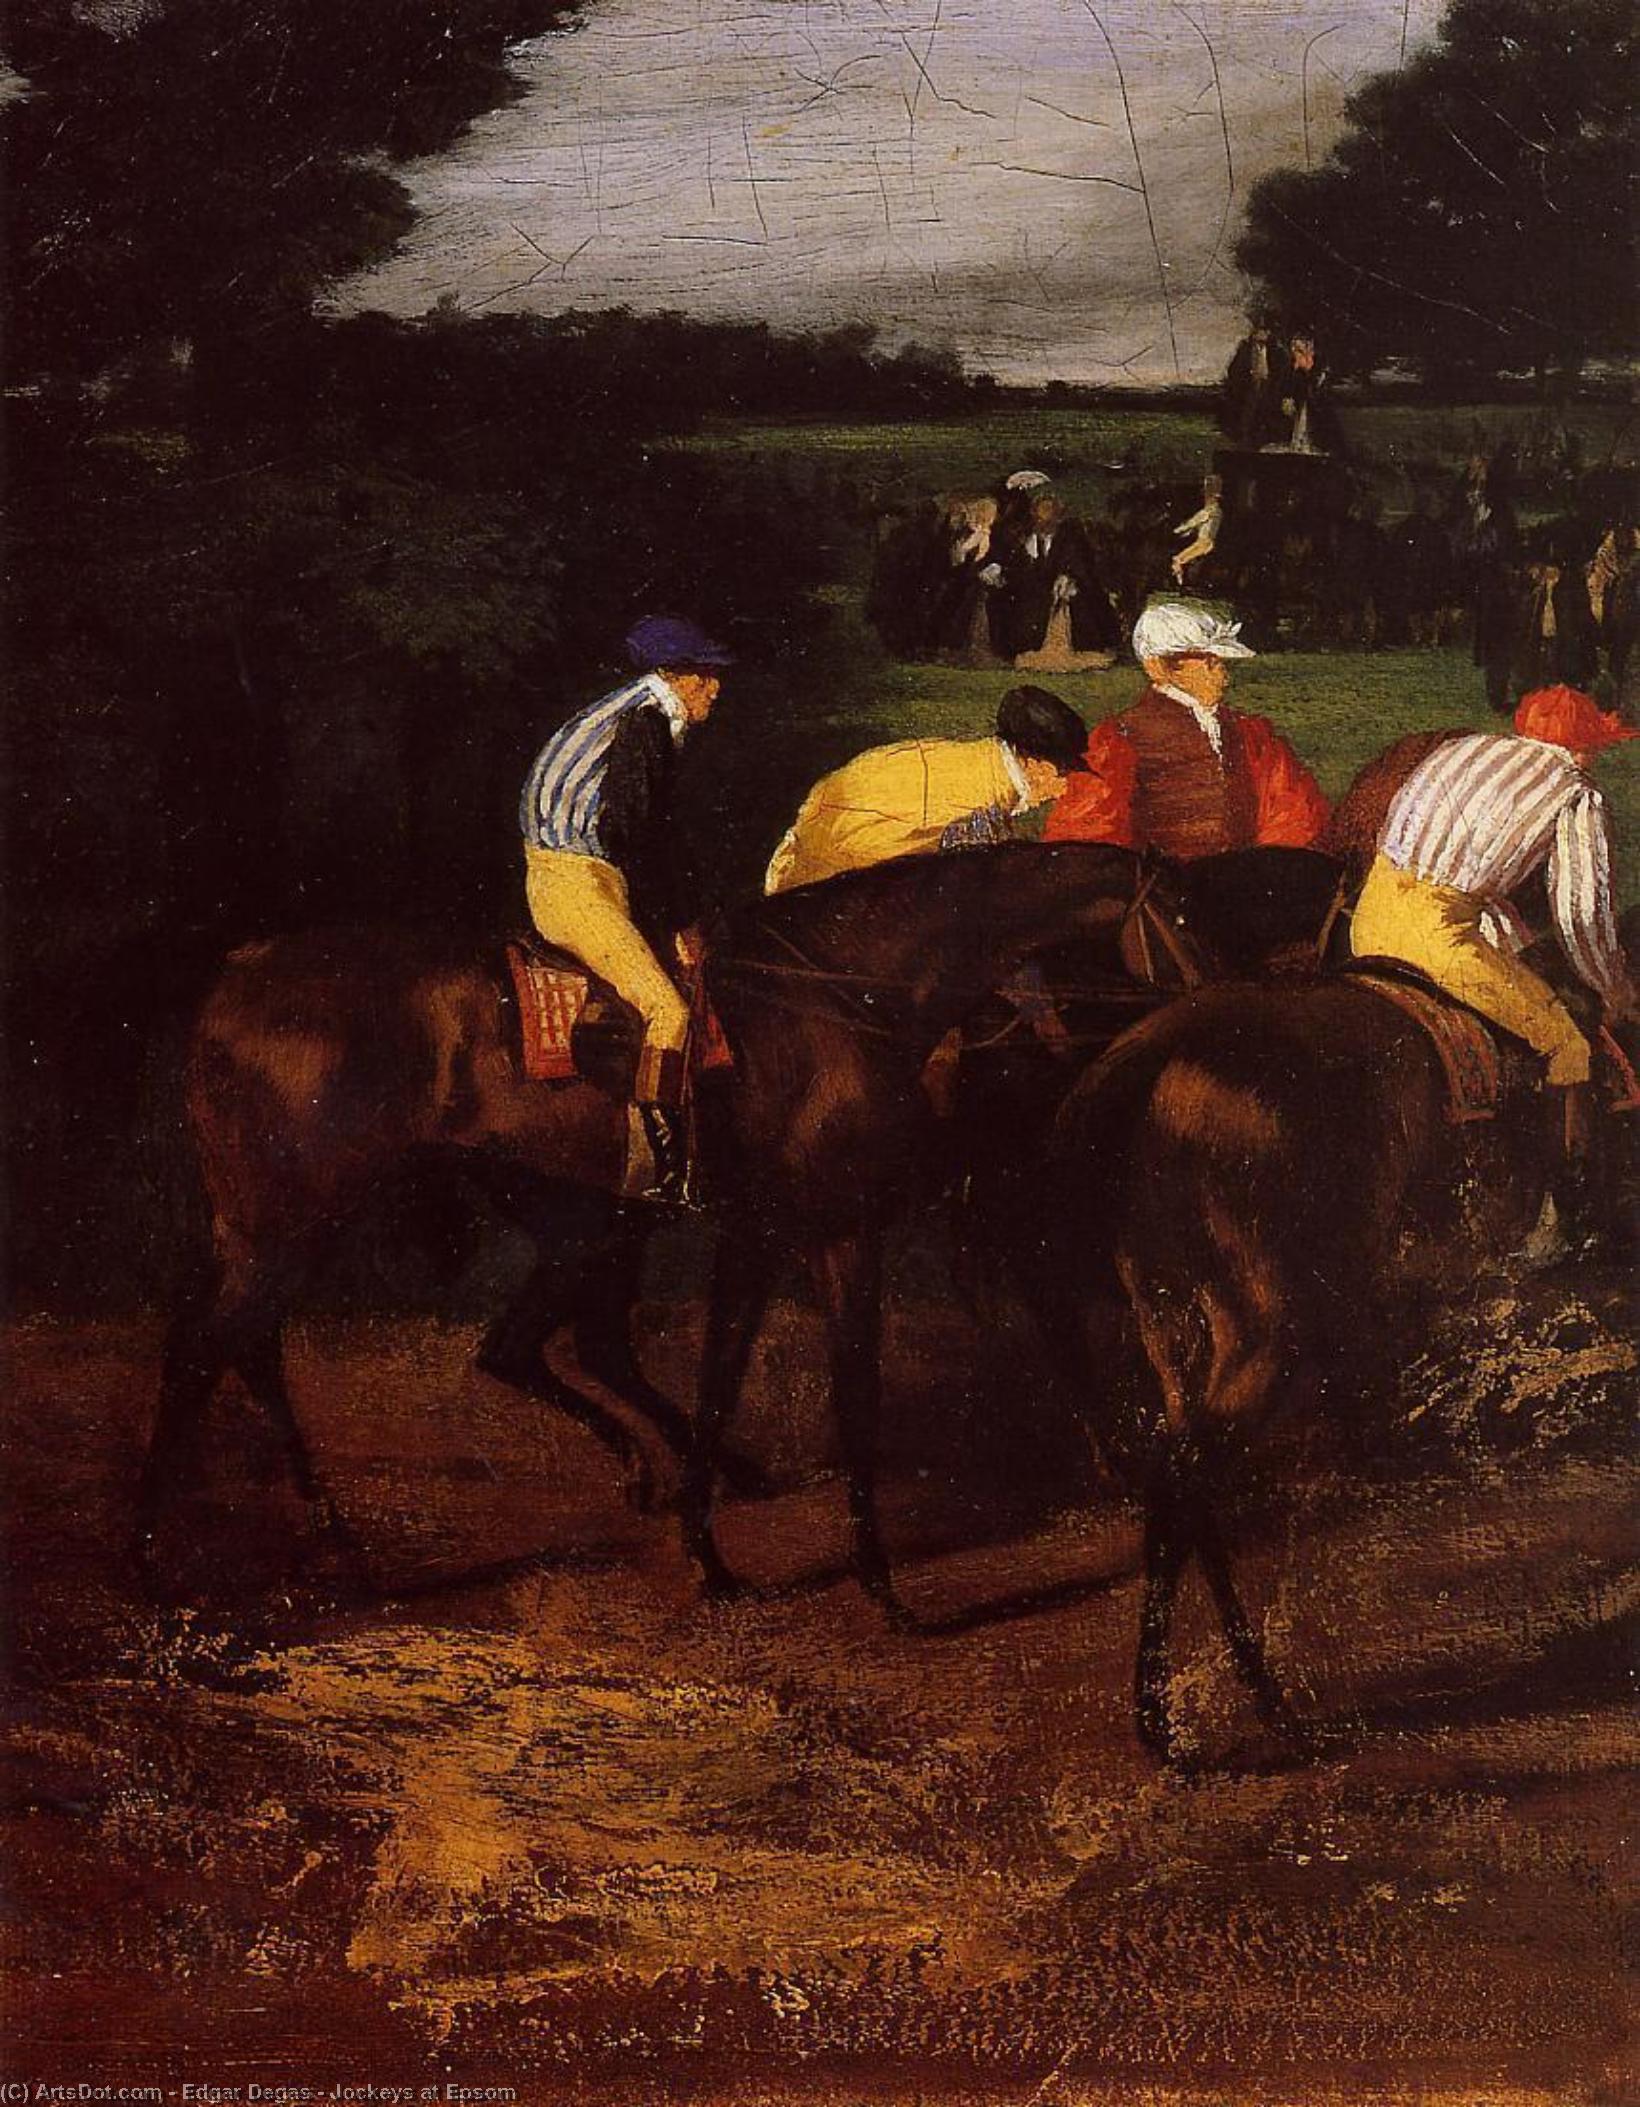 WikiOO.org - Encyclopedia of Fine Arts - Malba, Artwork Edgar Degas - Jockeys at Epsom